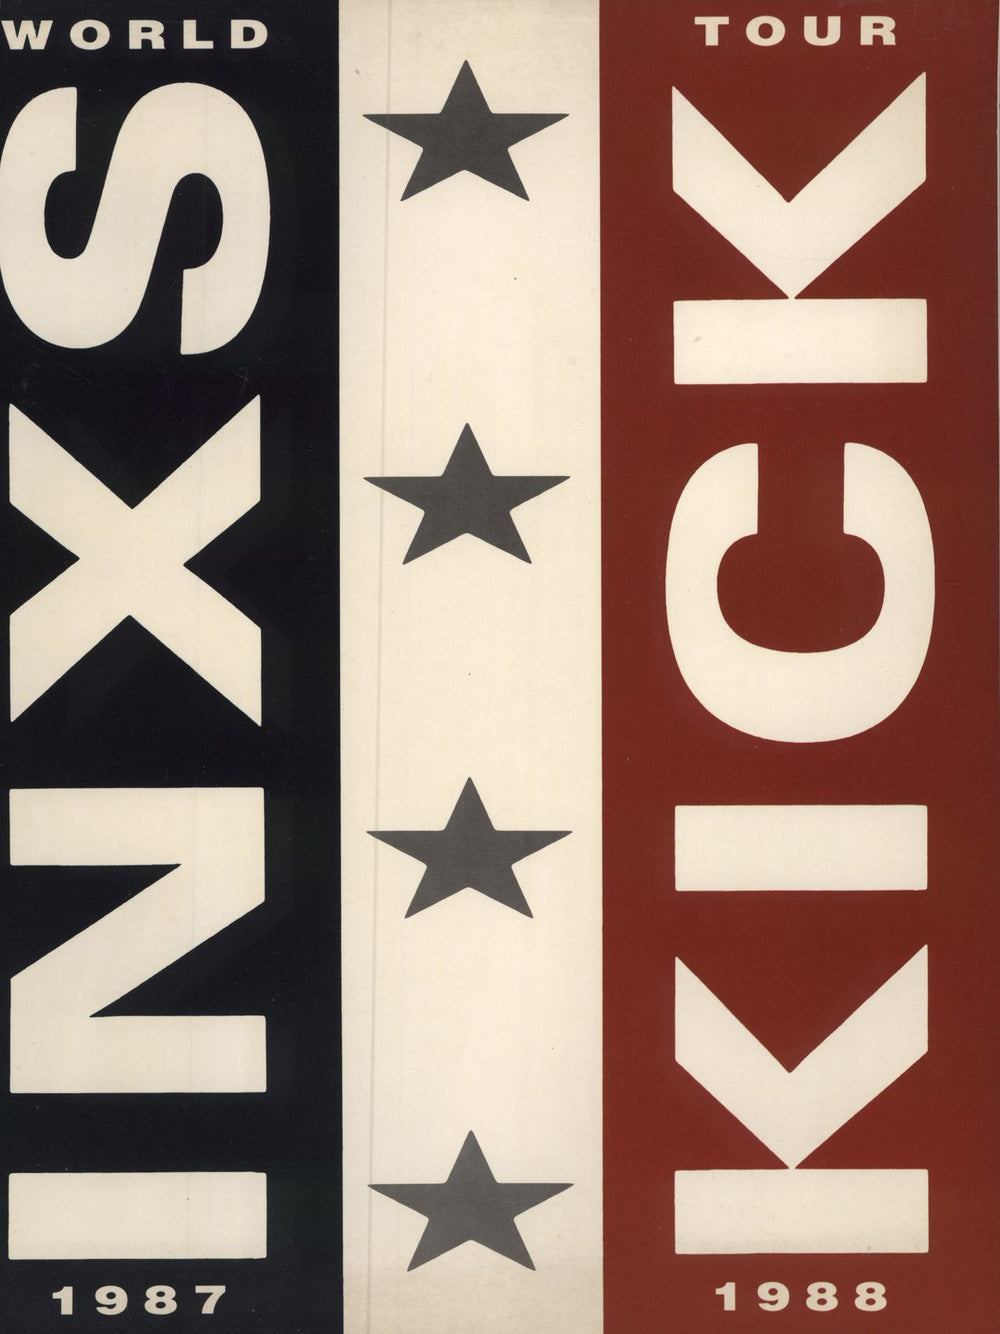 Inxs Kick Tour 1987/88 + Ticket Stub US tour programme PROGRAMME + TICKET